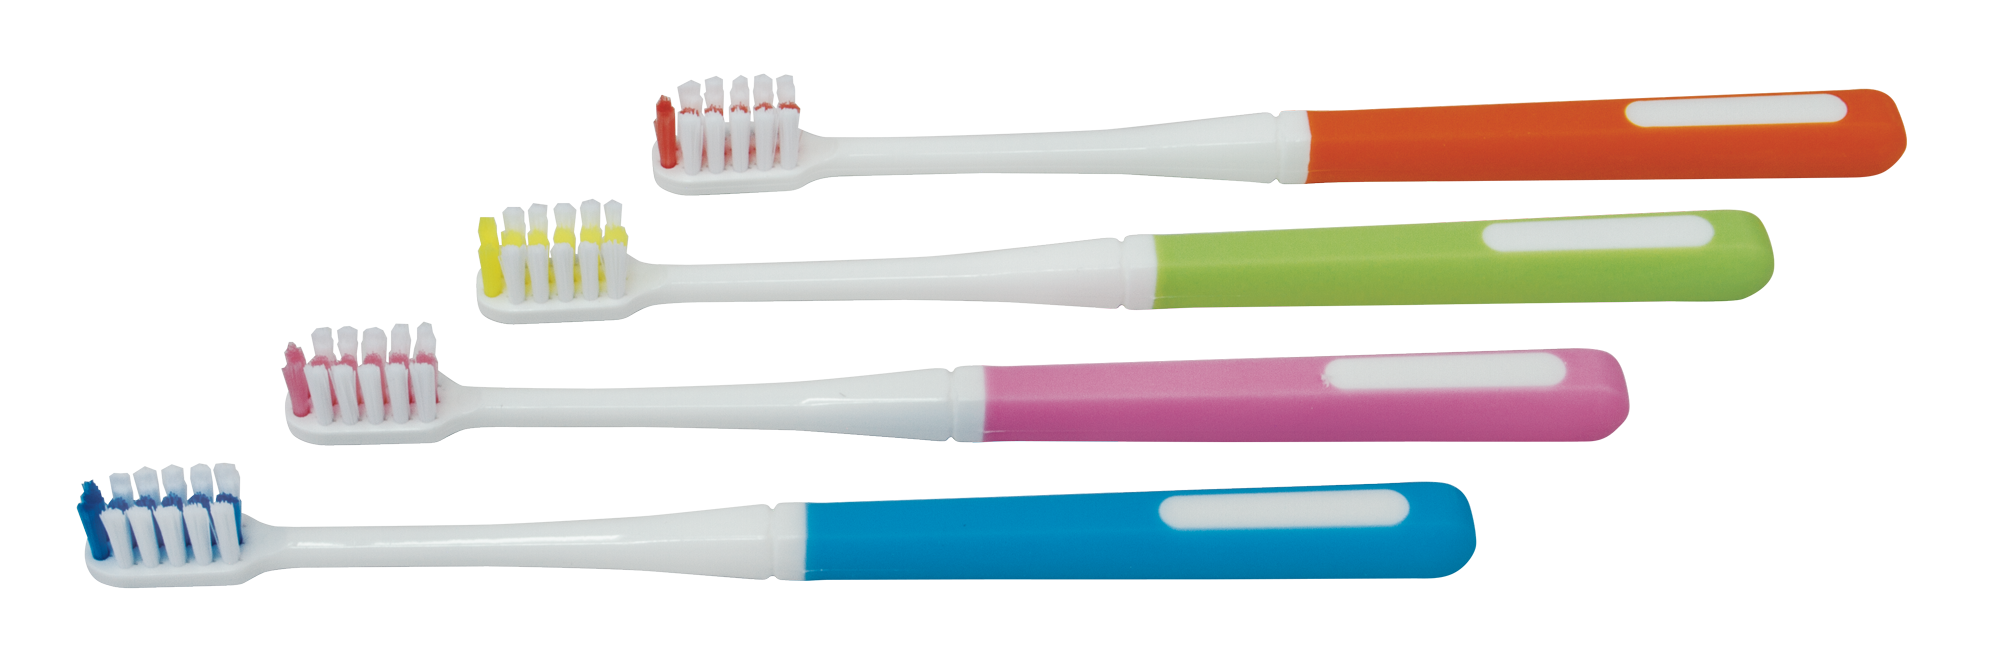 Orthodontic "V" Shaped Toothbrushes (Pkg. 12)